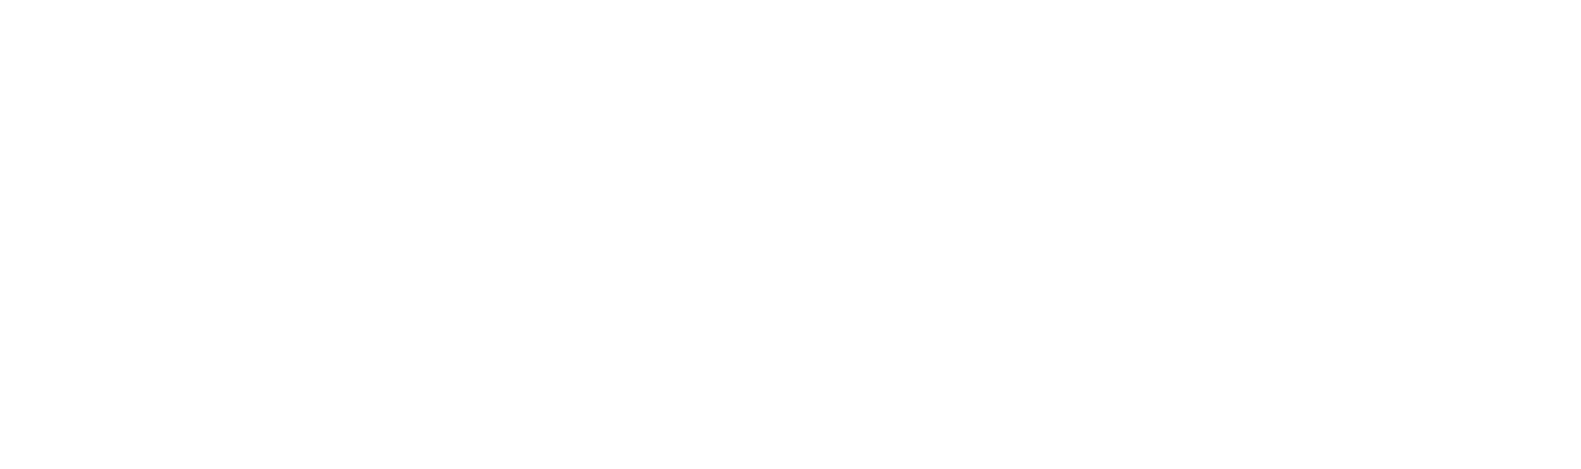 Klaviyo logo grand pour les fonds sombres (PNG transparent)